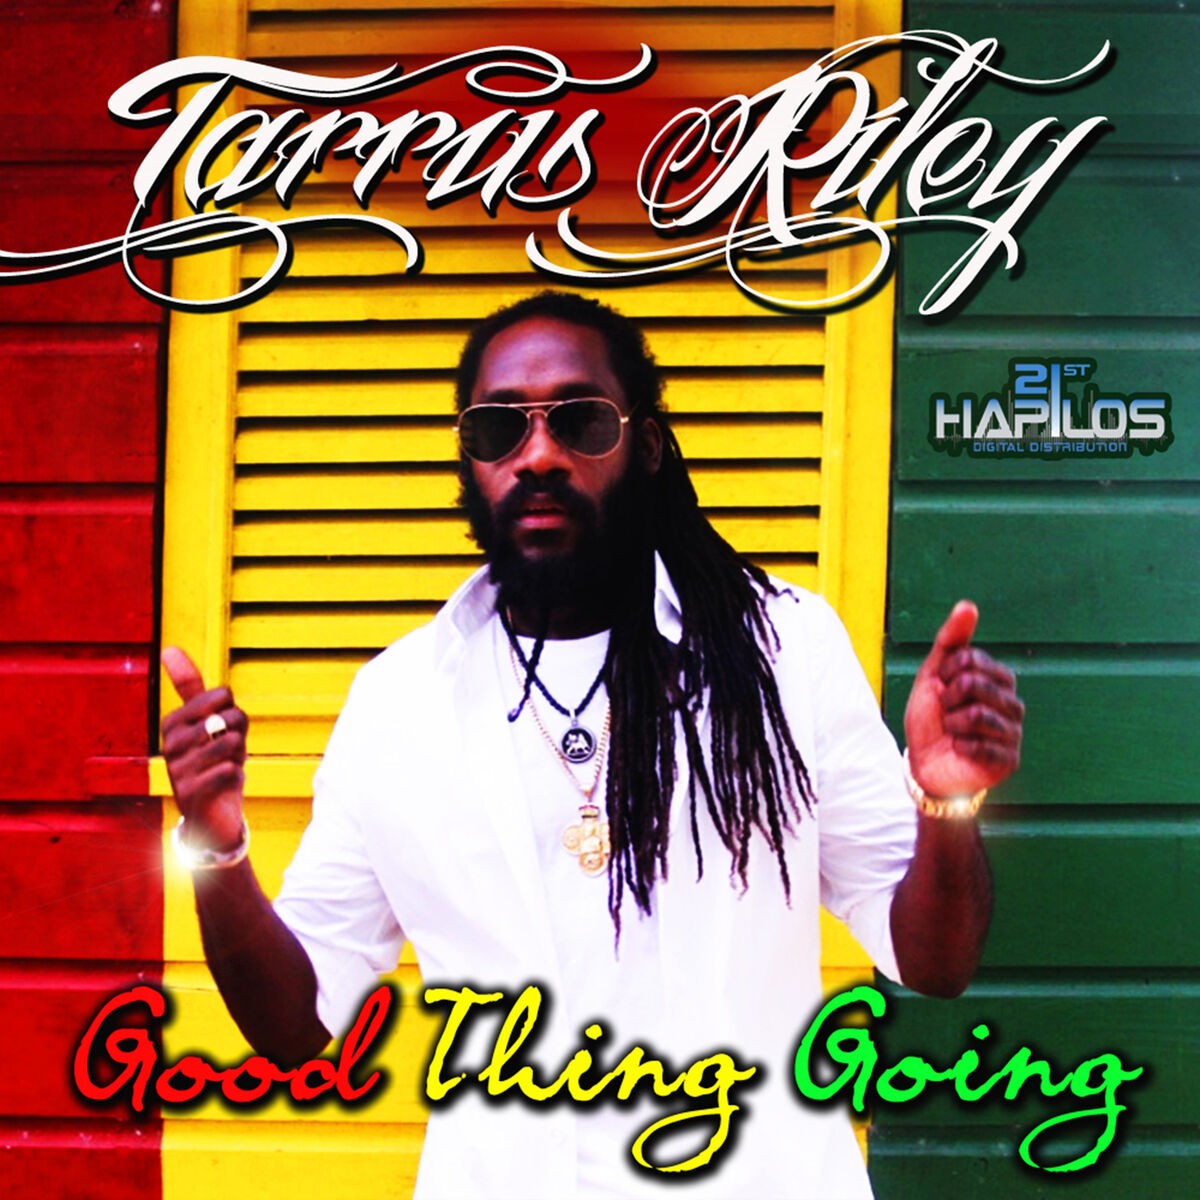 Tarrus Riley: albums, songs, playlists | Listen on Deezer